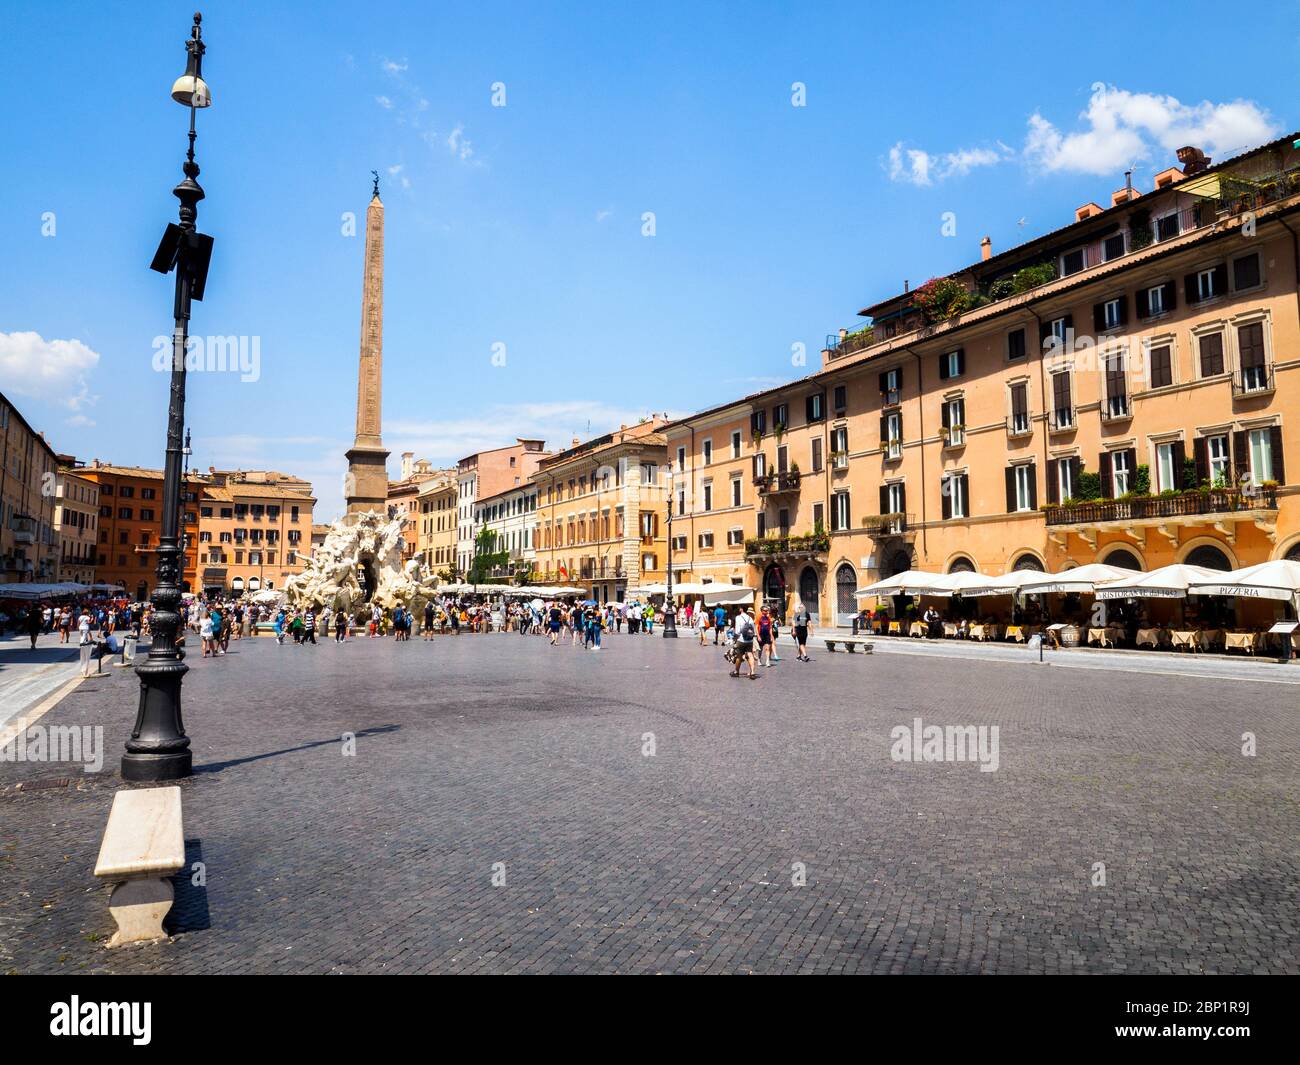 Piazza Navona - Rome, Italy Stock Photo